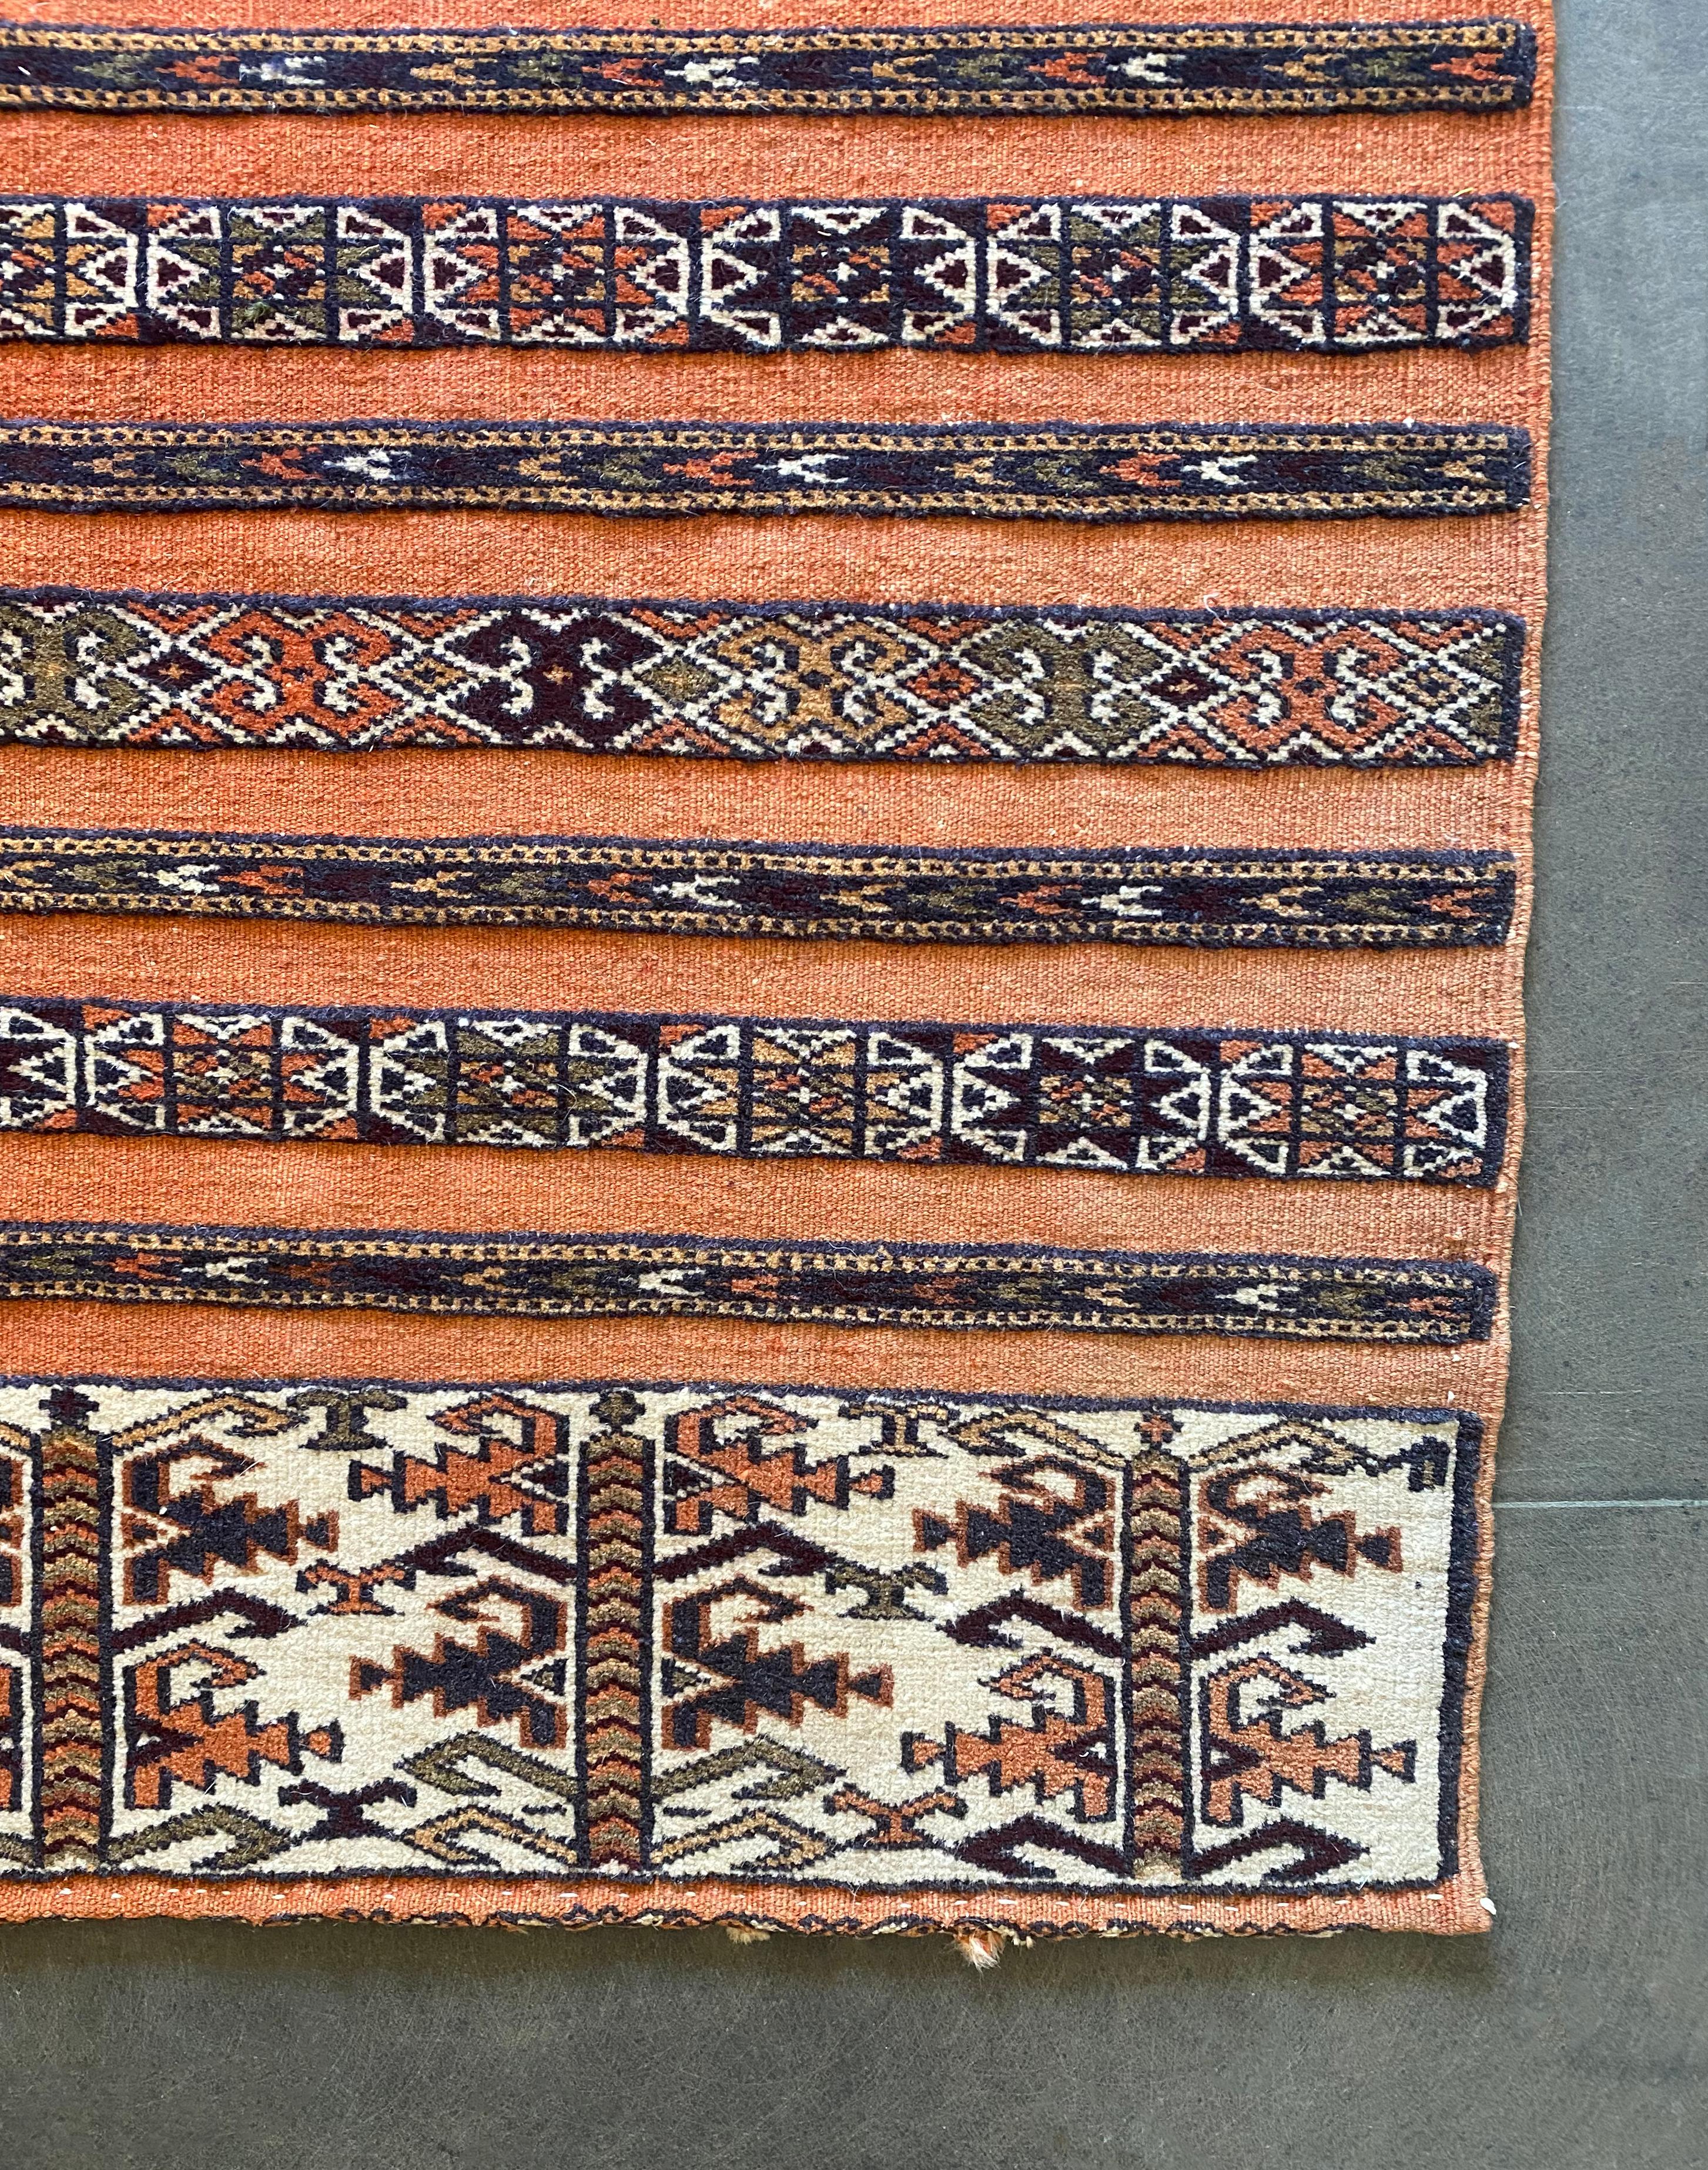 Dieser Yomud-Stammesteppich aus Turkmenistan zeichnet sich durch einen auffälligen orangefarbenen Hintergrund sowie eine Mischung aus Stammesdetails und -motiven aus. Sie besteht aus Wolle und stammt aus dem frühen 20. Jahrhundert. 

Abmessungen: